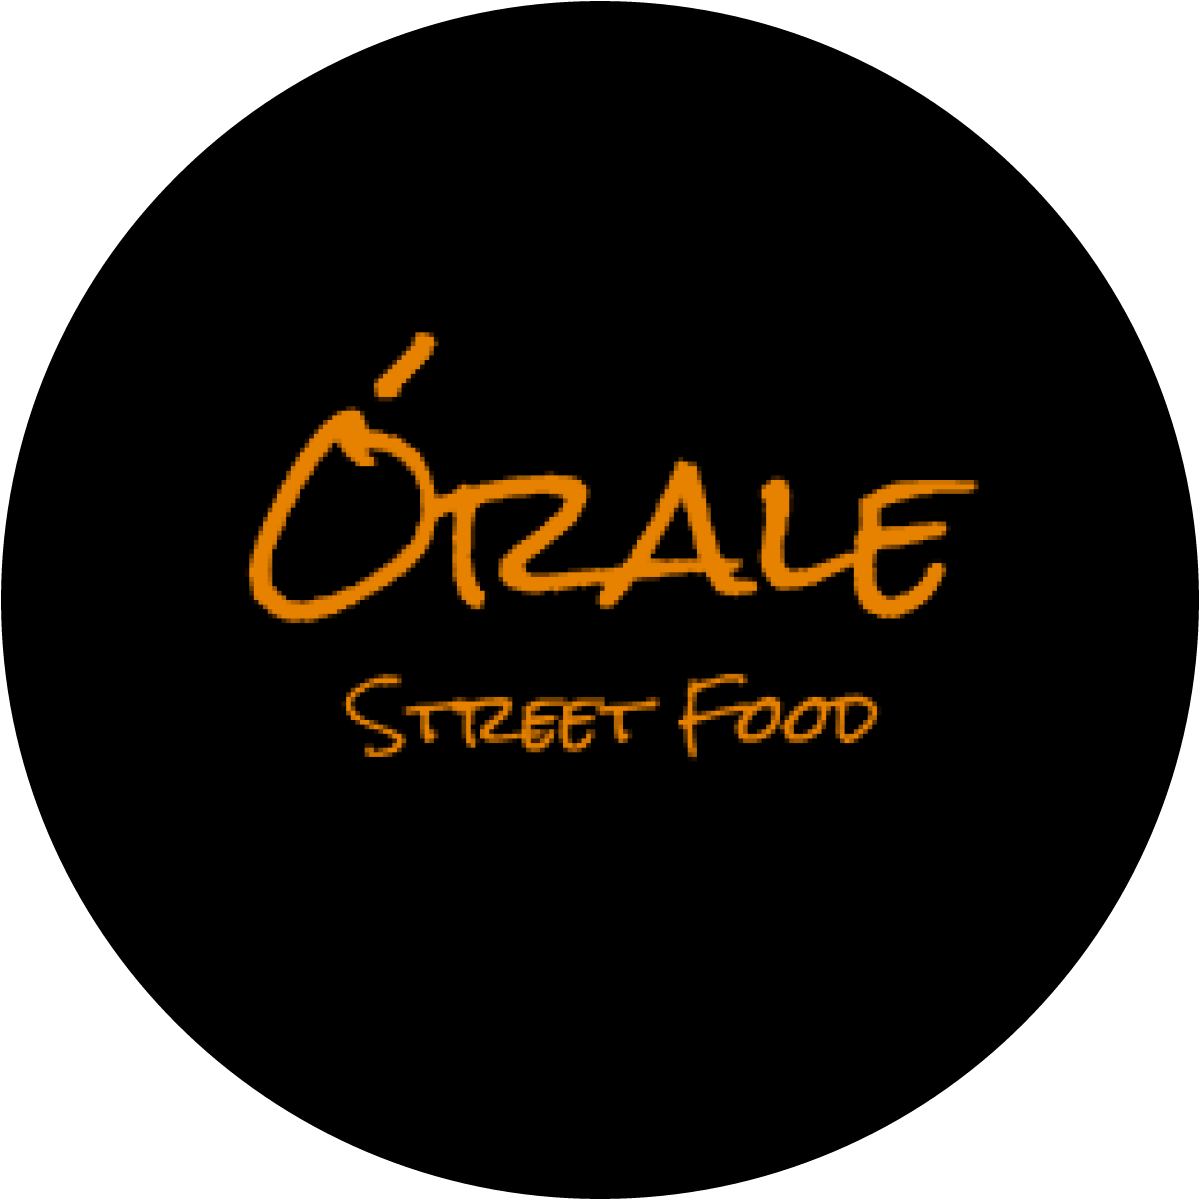 Órale Street Food